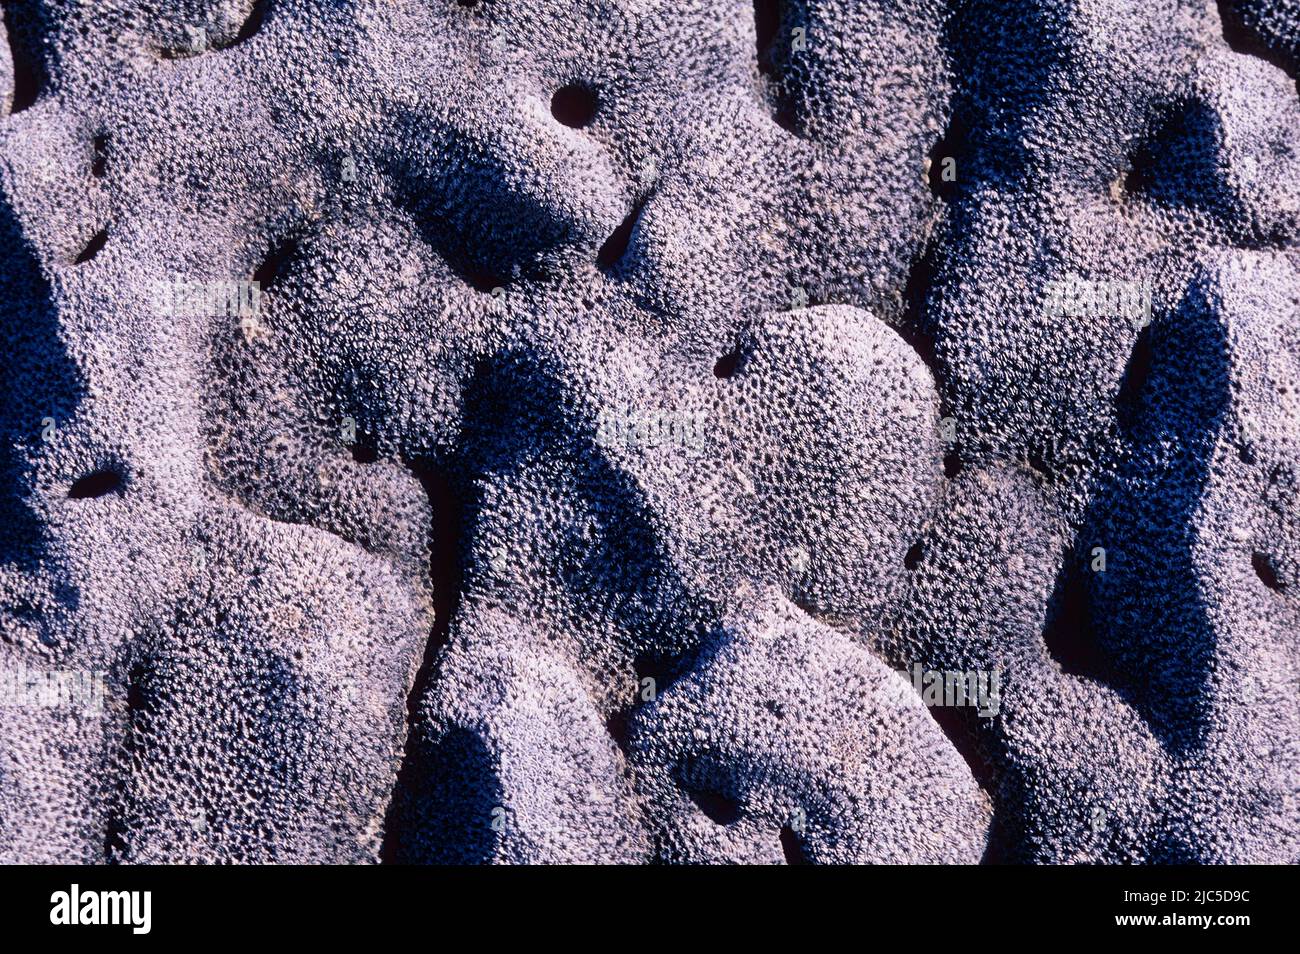 Korallenskelett, Inland, freigelegt durch schnelle Bodenerhöhung durch vulkanische Aktivität, Galapagos Stock Photo